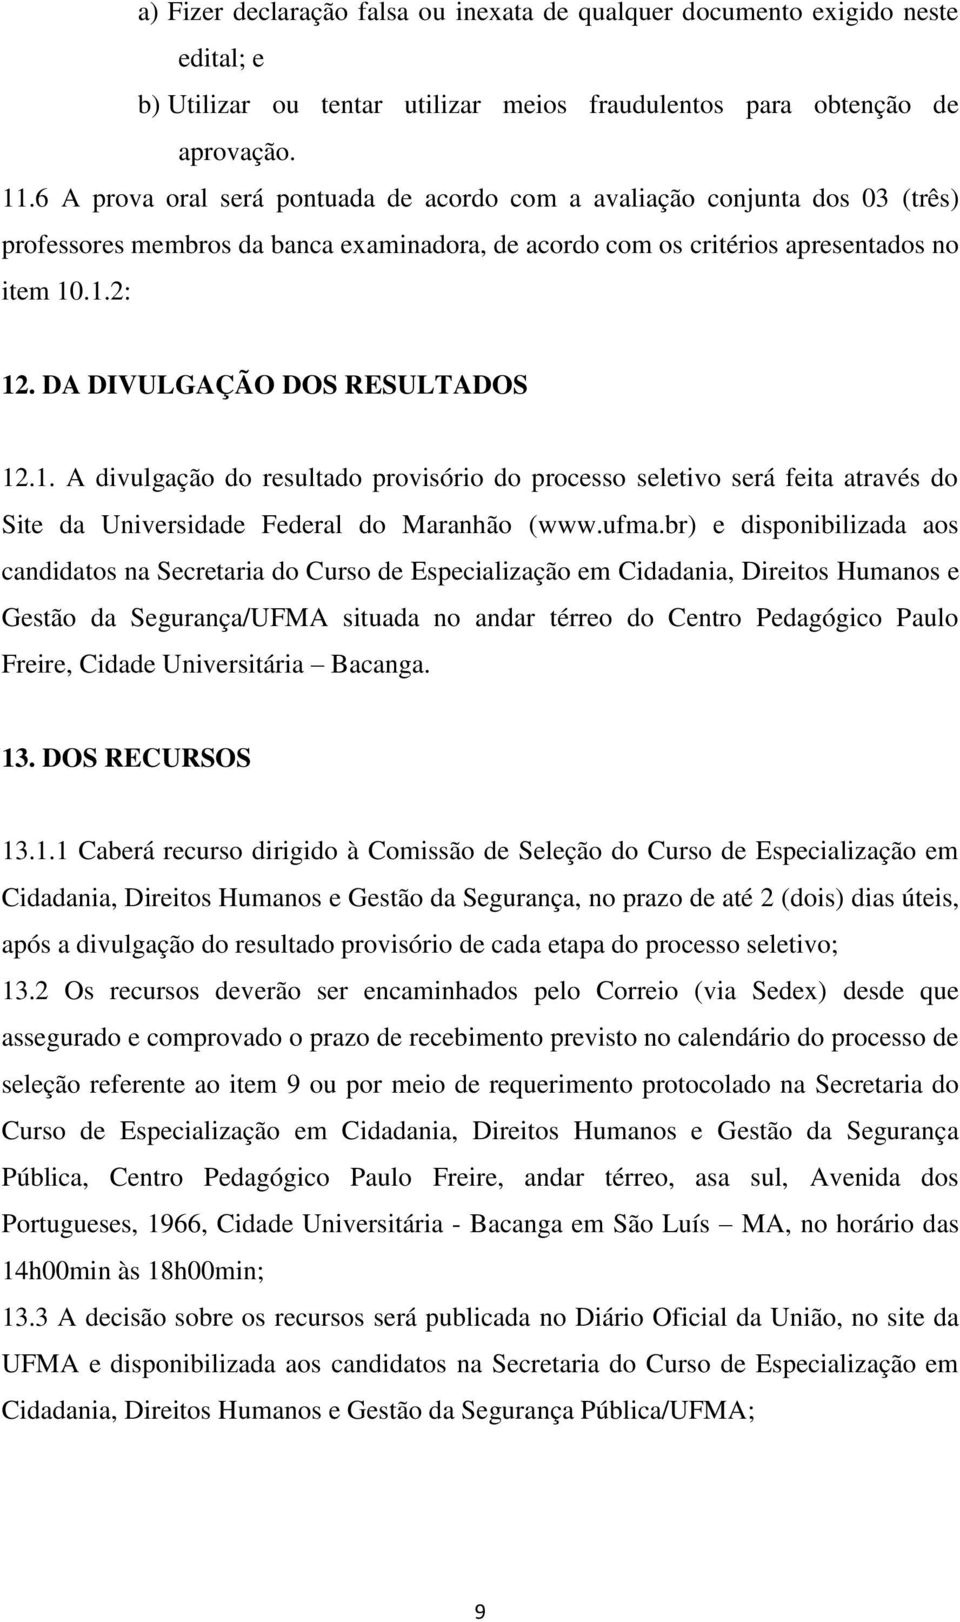 DA DIVULGAÇÃO DOS RESULTADOS 12.1. A divulgação do resultado provisório do processo seletivo será feita através do Site da Universidade Federal do Maranhão (www.ufma.